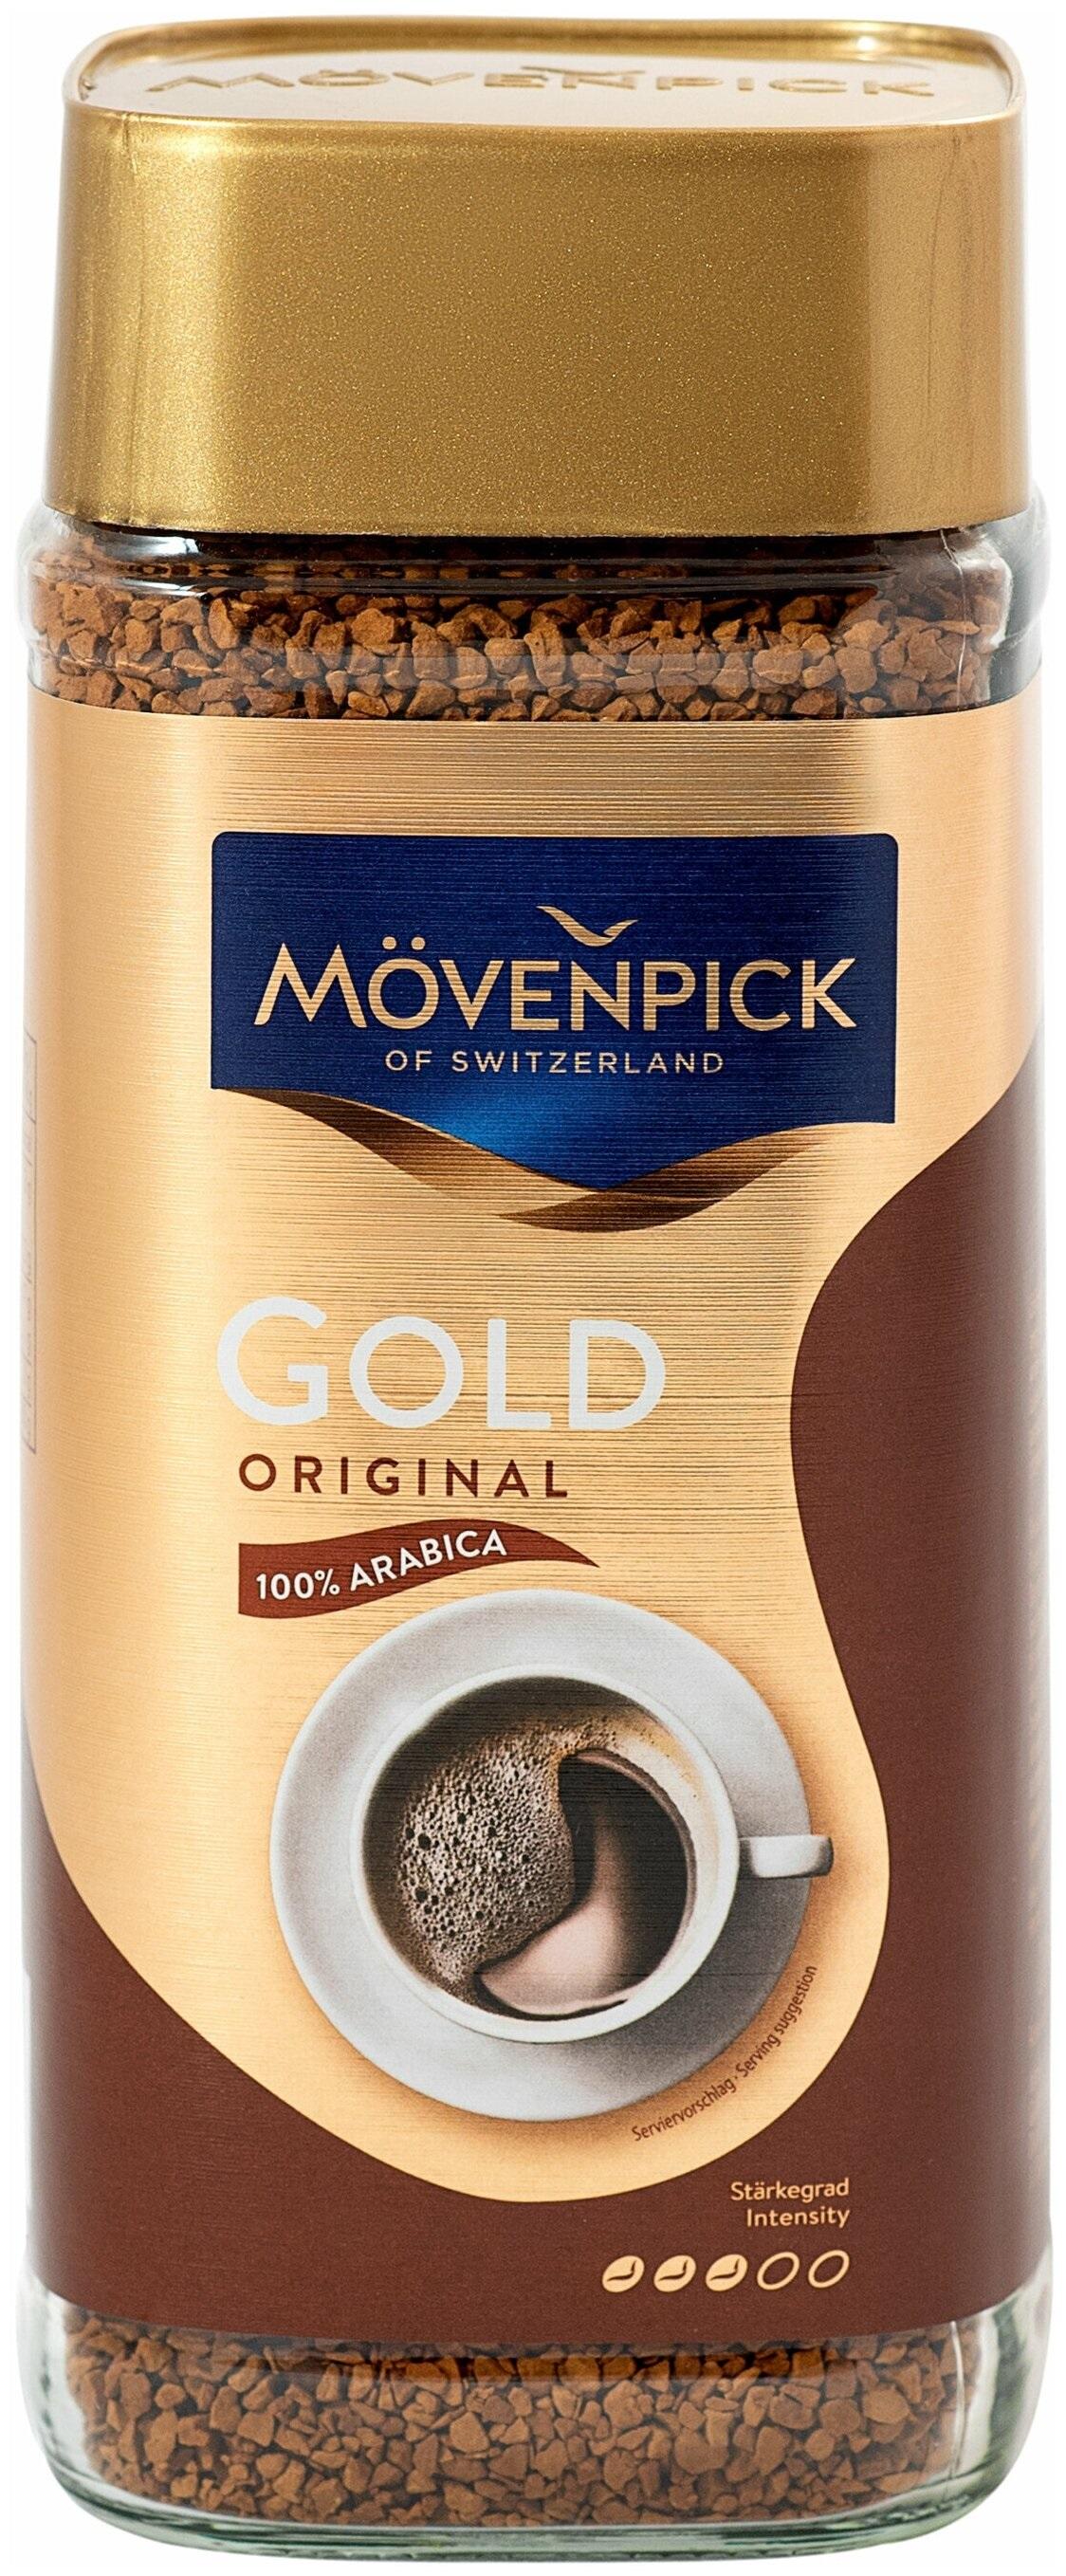 Movenpick gold original